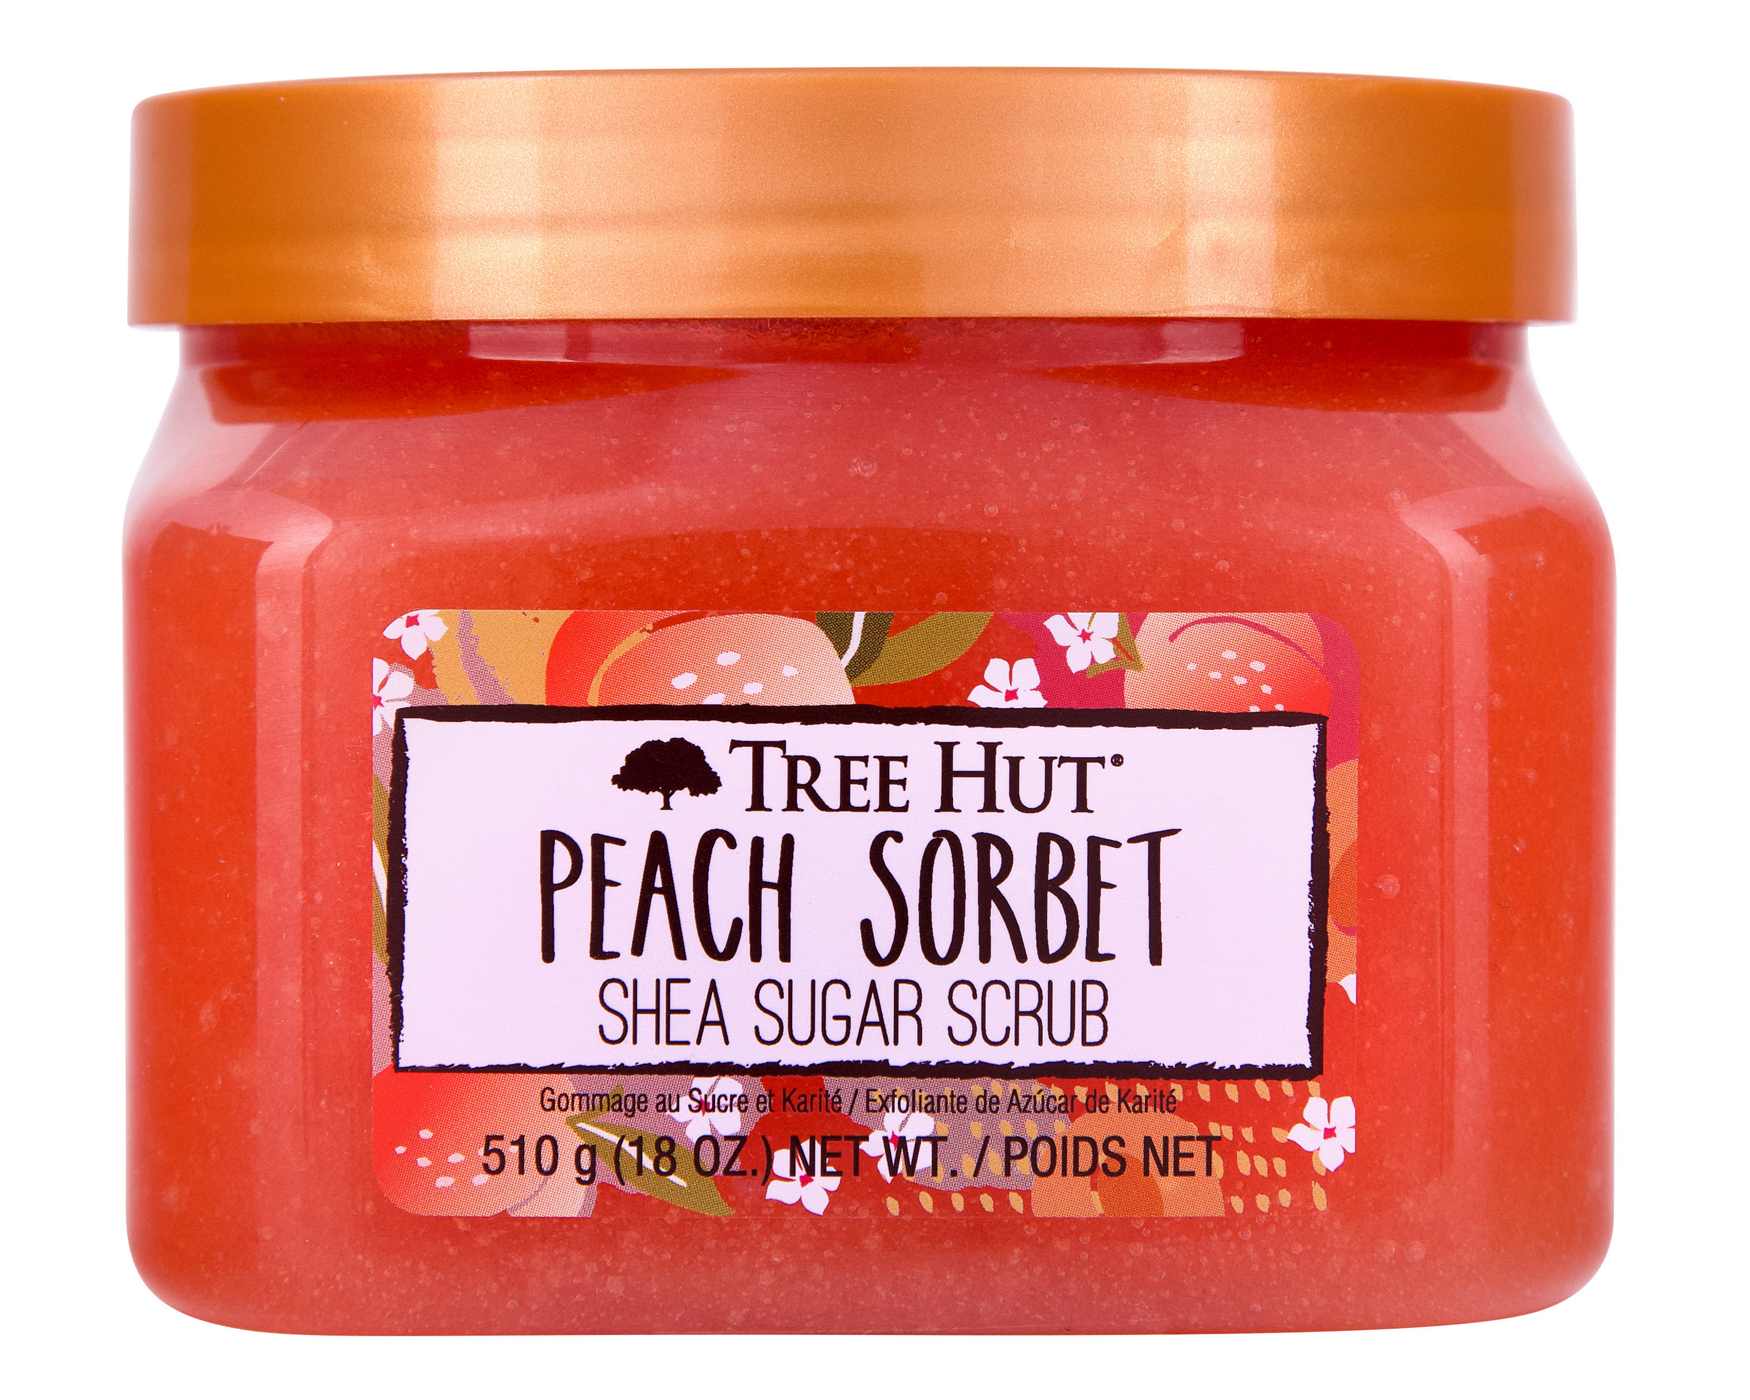 Tree Hut Shea Sugar Scrub - Peach Sorbet ; image 1 of 2